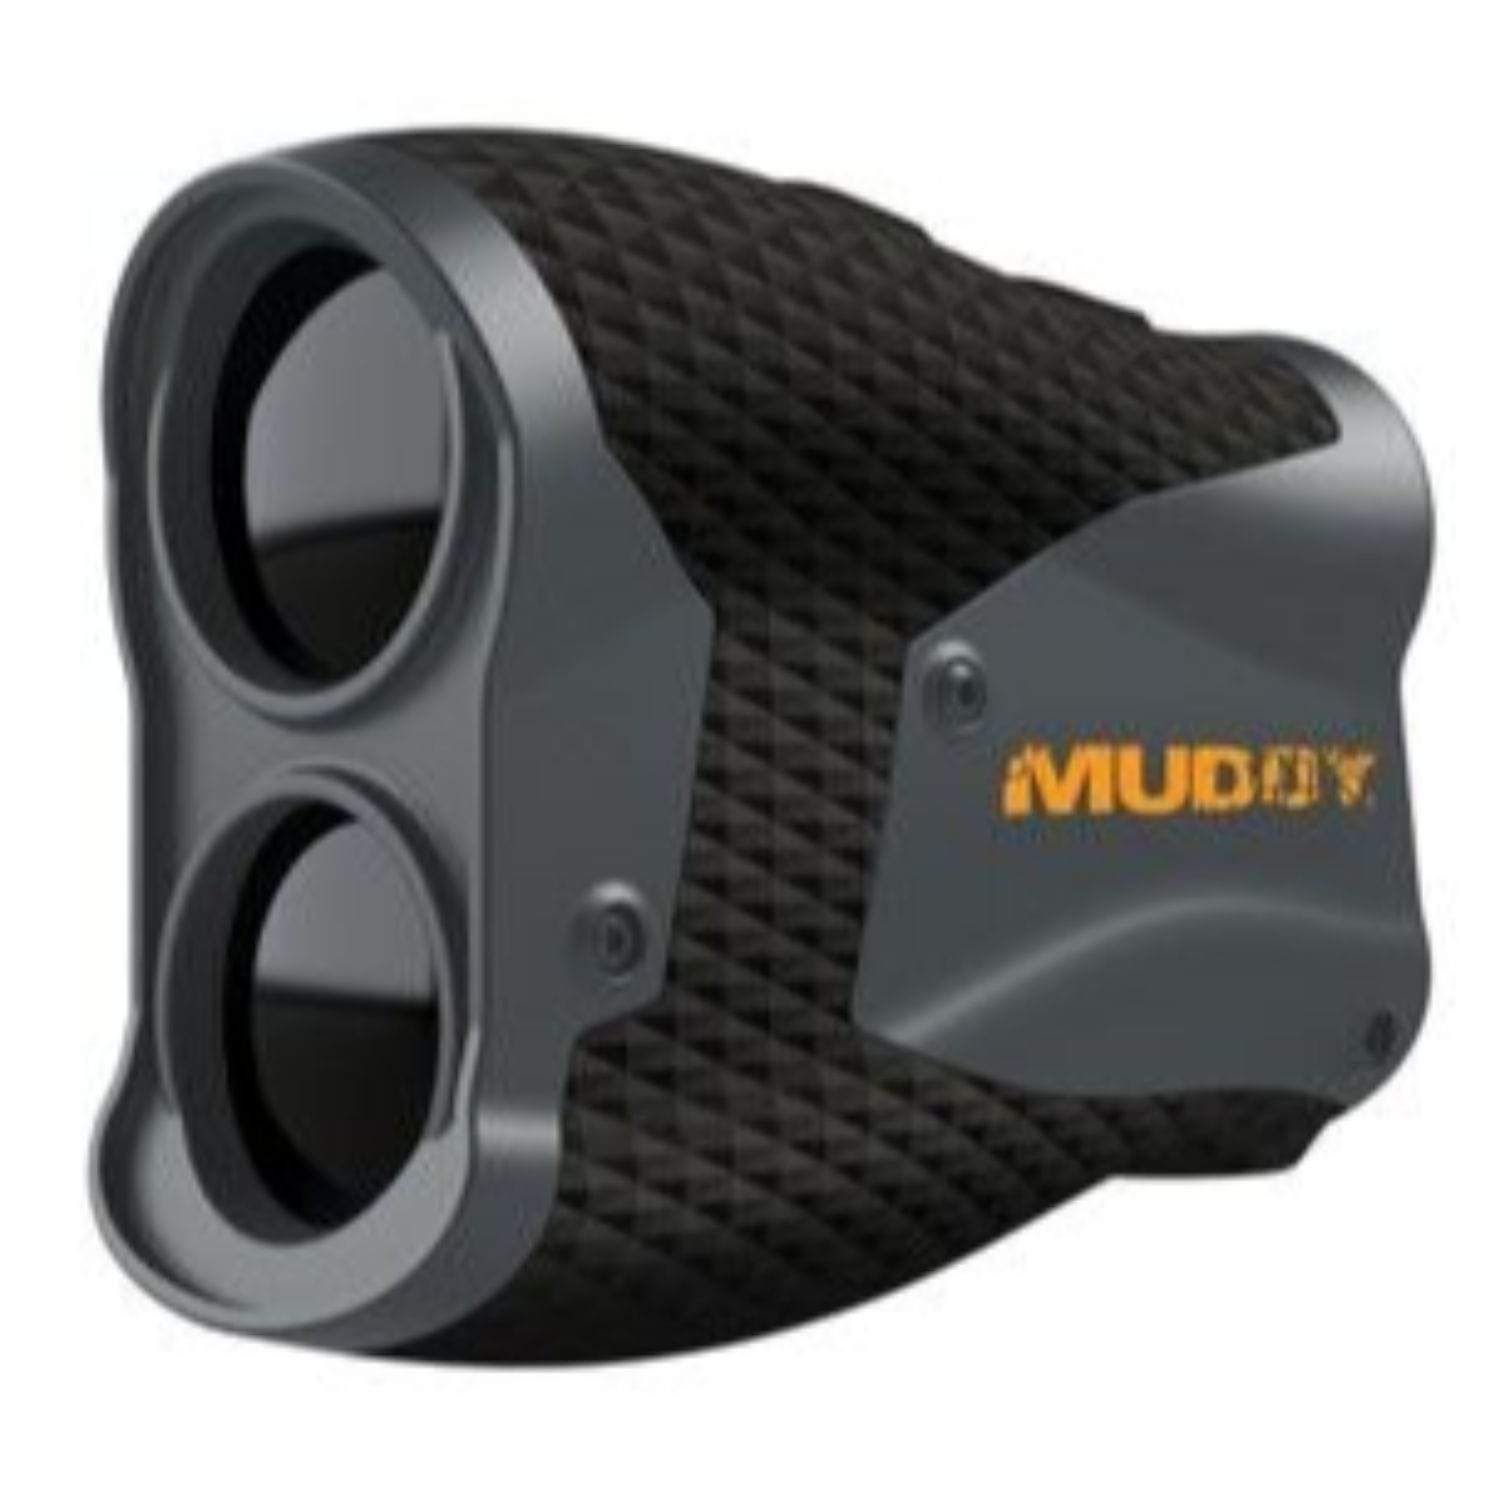 Muddy Optics : Rangefinders Muddy Range Finder 650